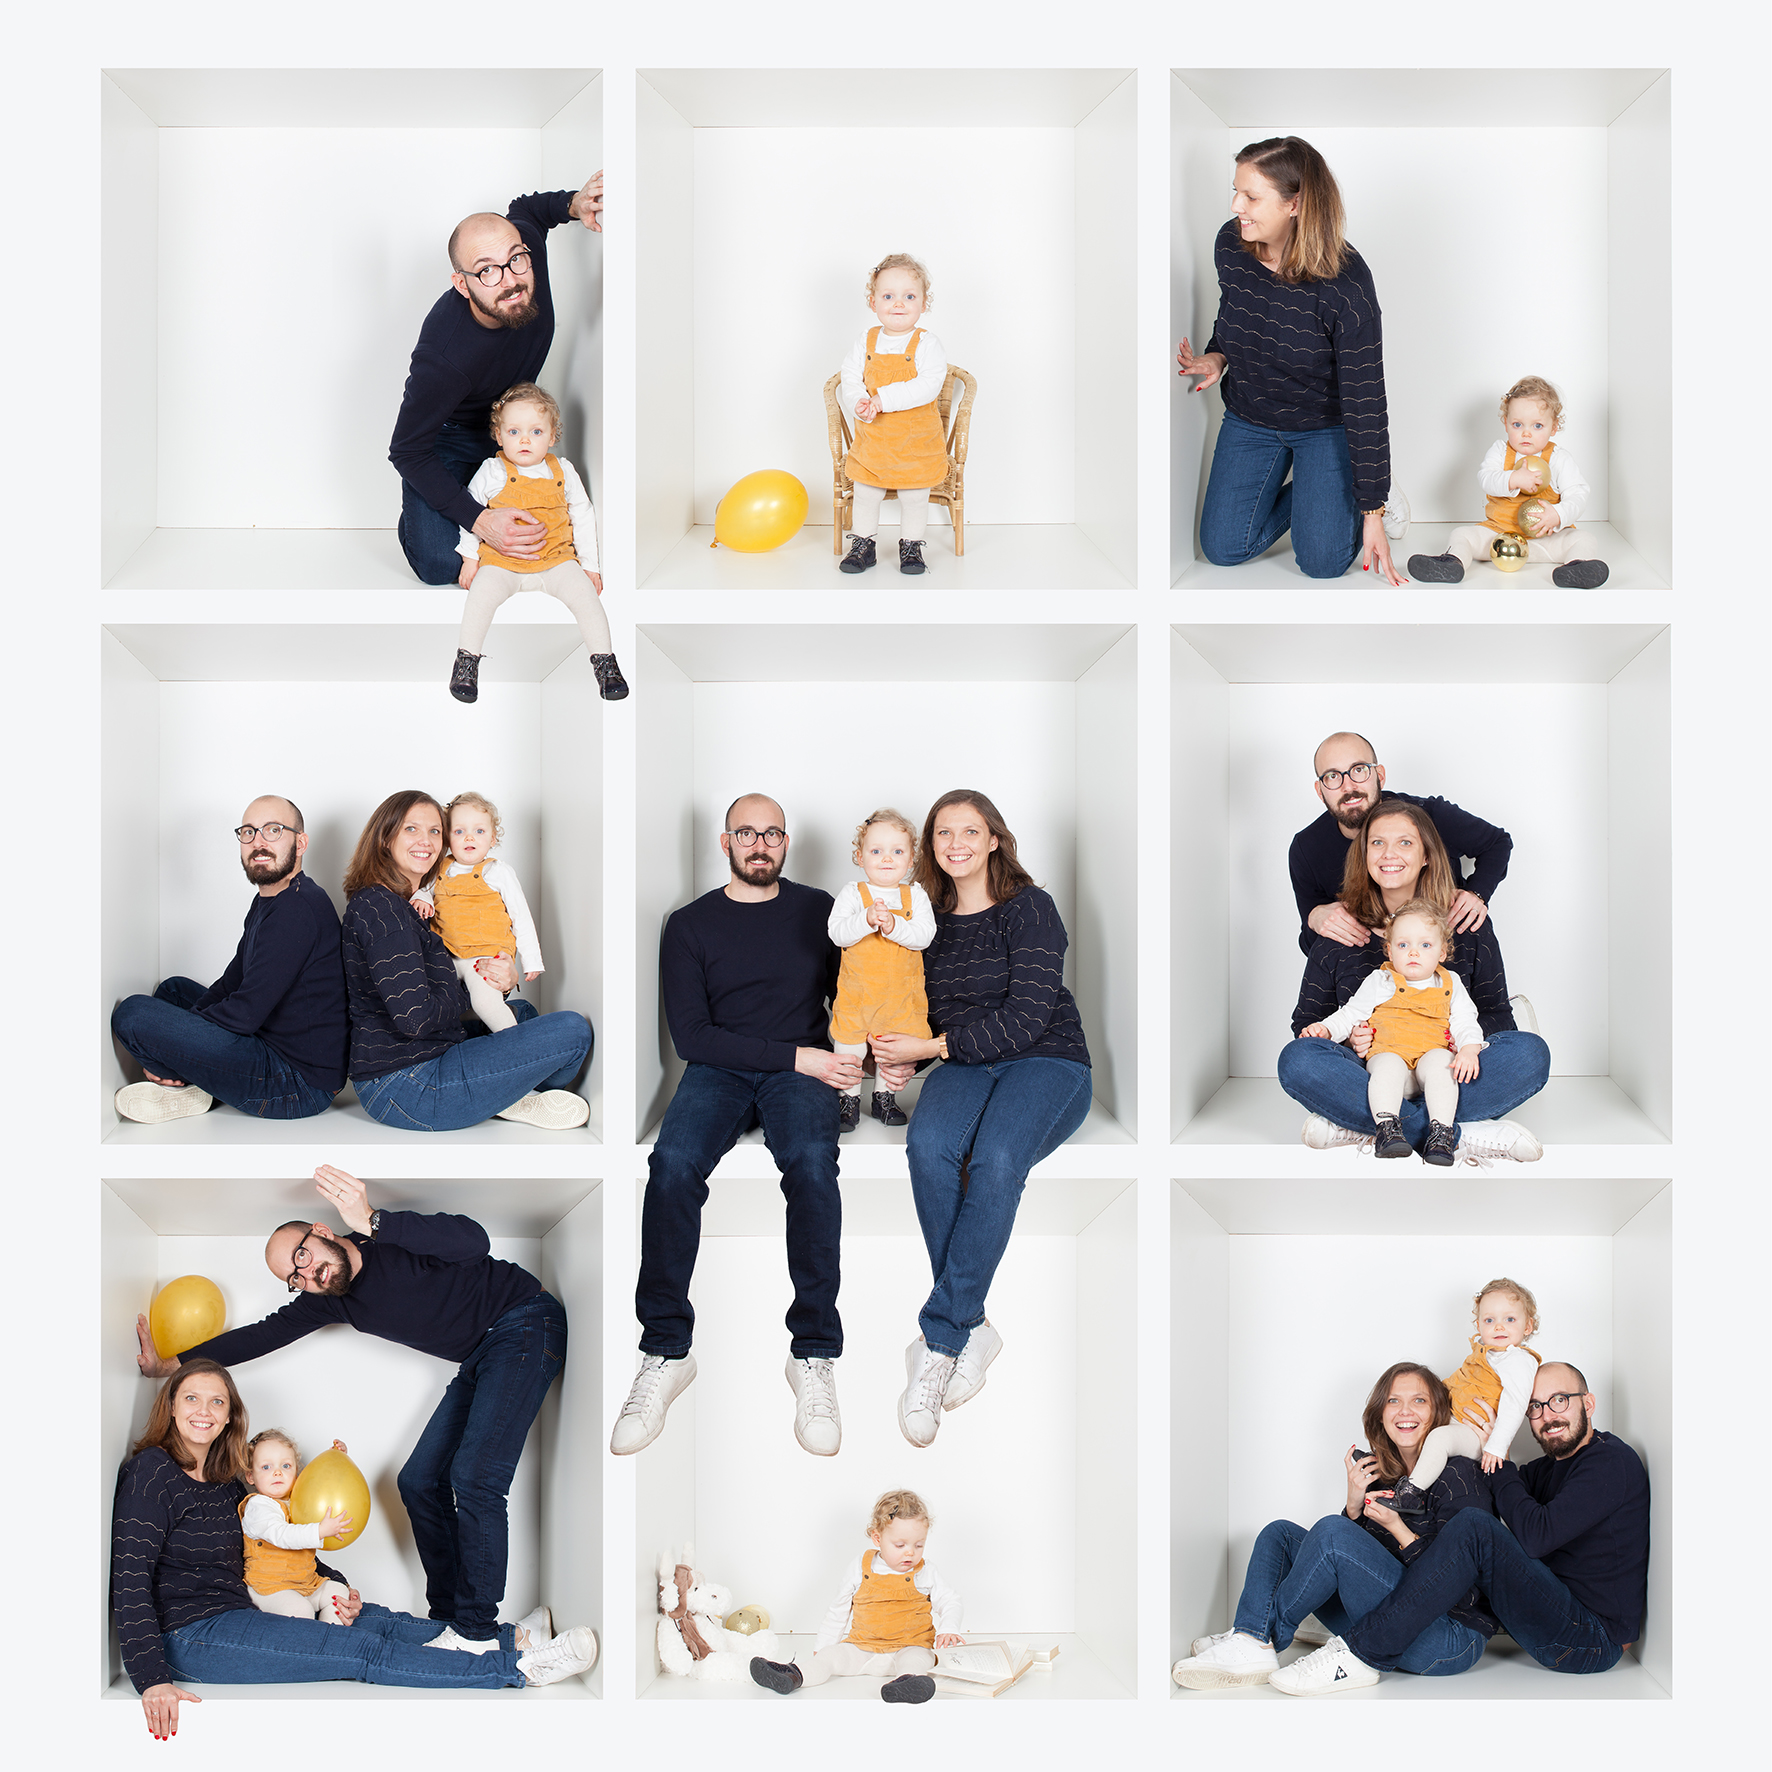 Séance en famille réalisée en effectuant un montage de 9 photos afin de créer une seule photo